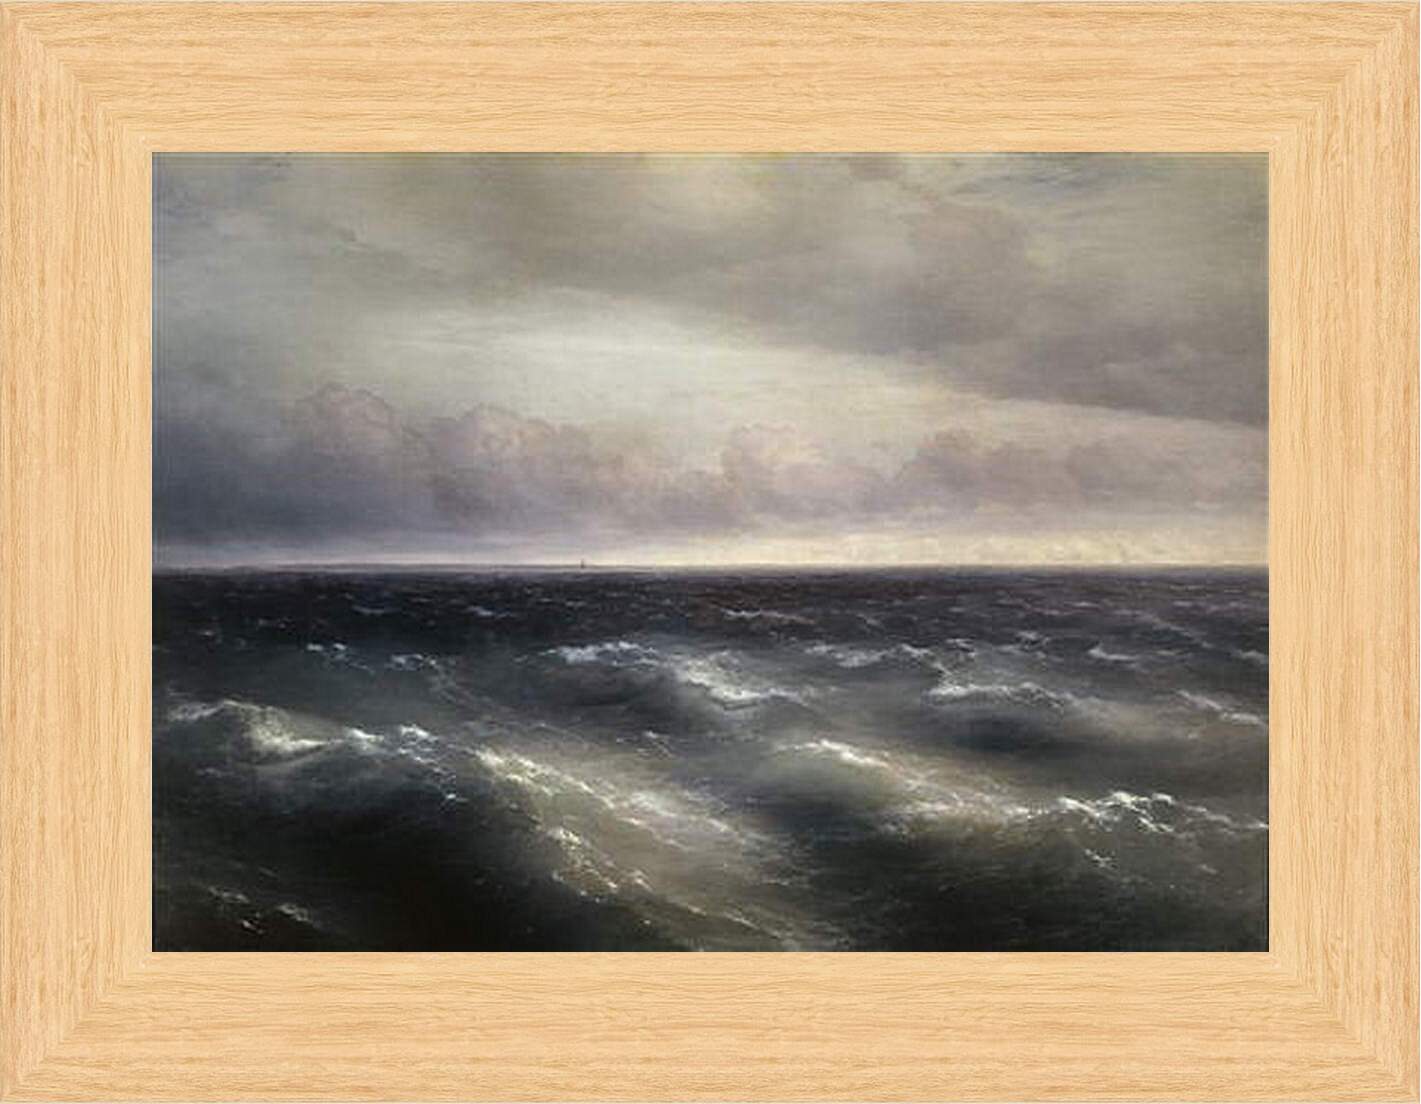 Картина в раме - Черное море (На Черном море начинает разыгрываться буря). Иван Айвазовский
